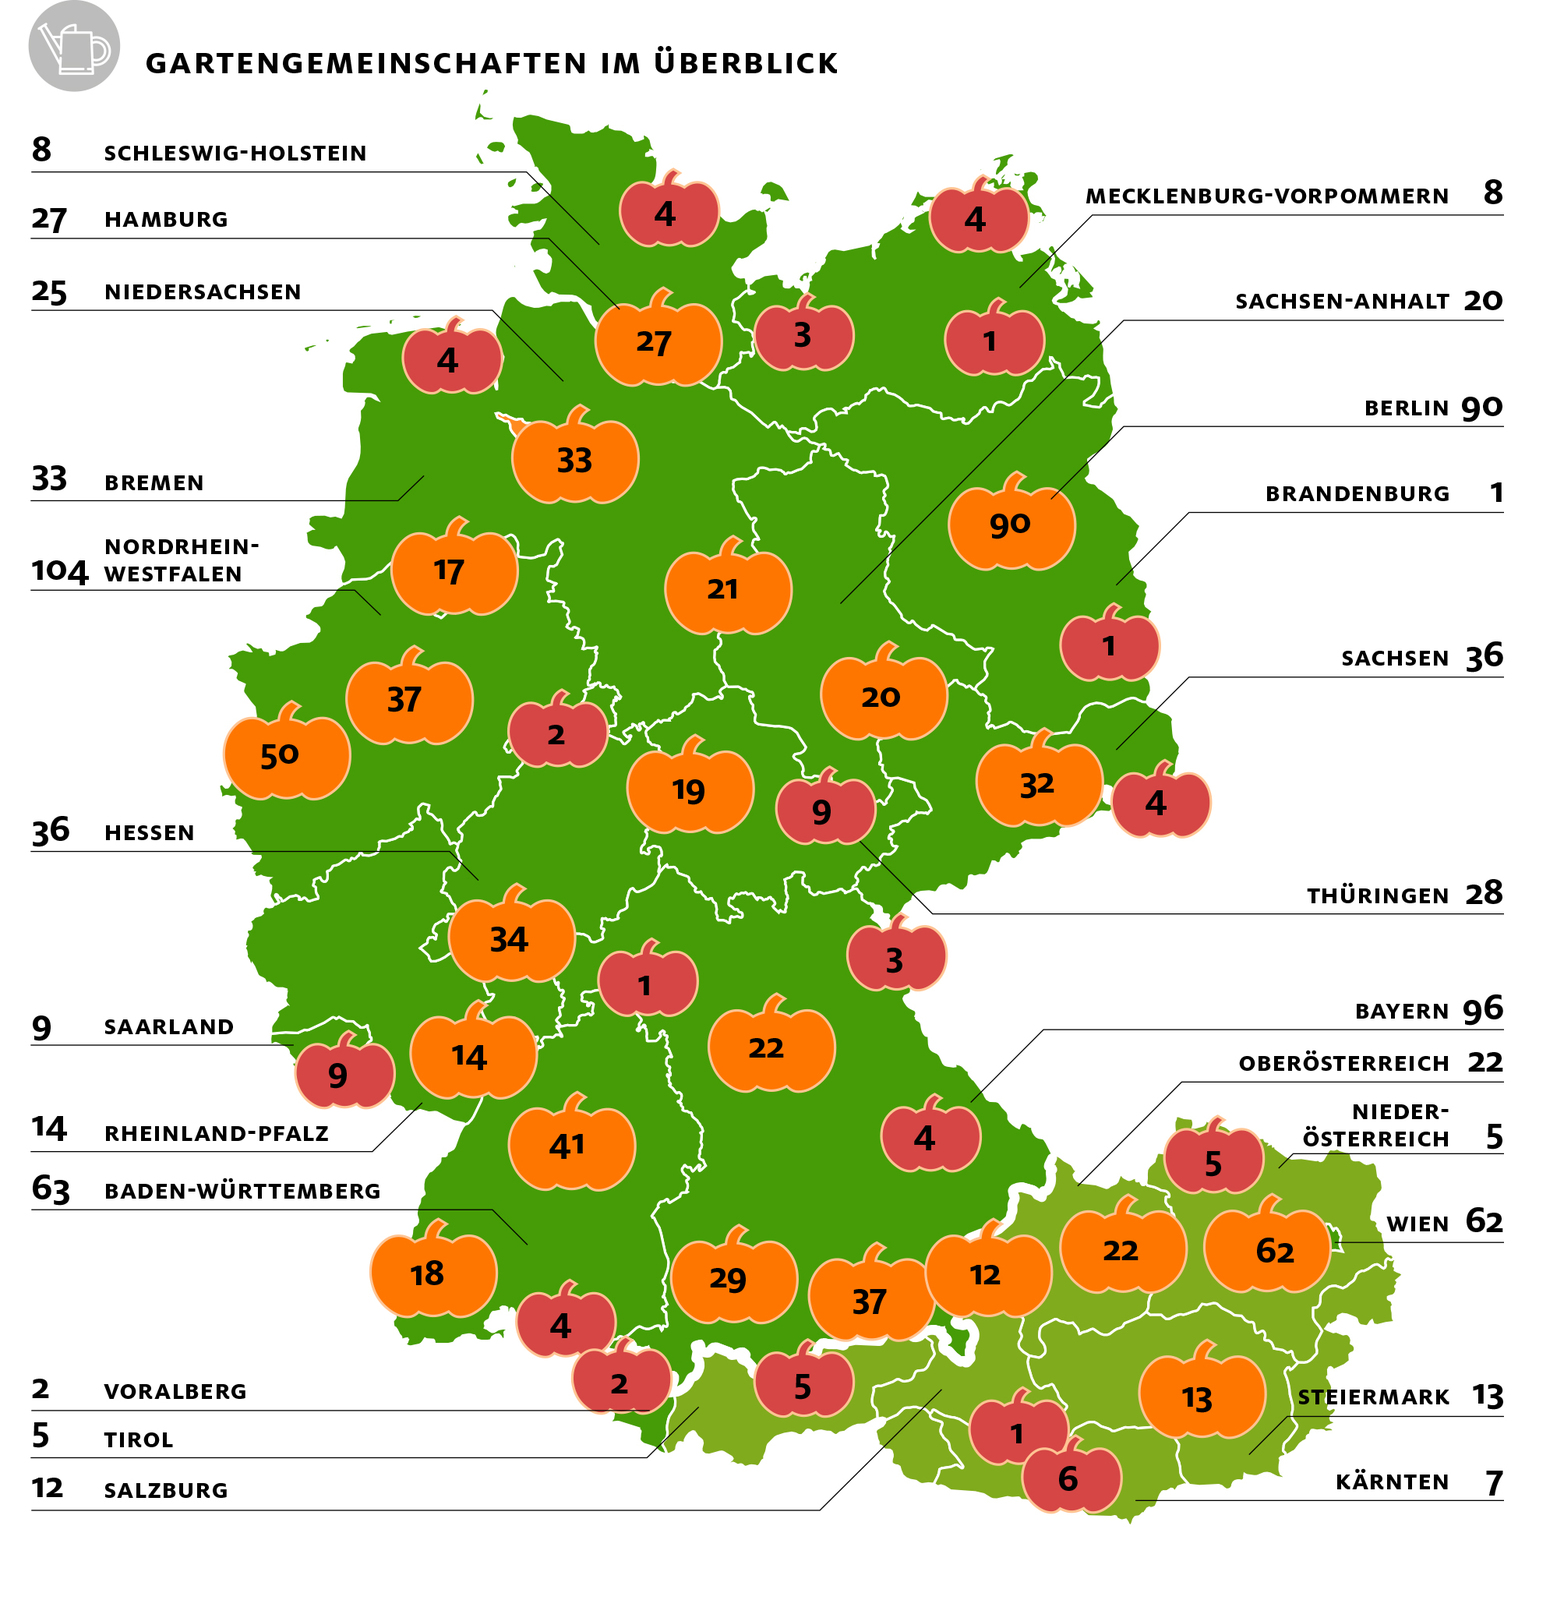 Gartengemeinschaften, Urban Gardening, Garten, Gemeinschaftsgarten, Deutschland, Österreich